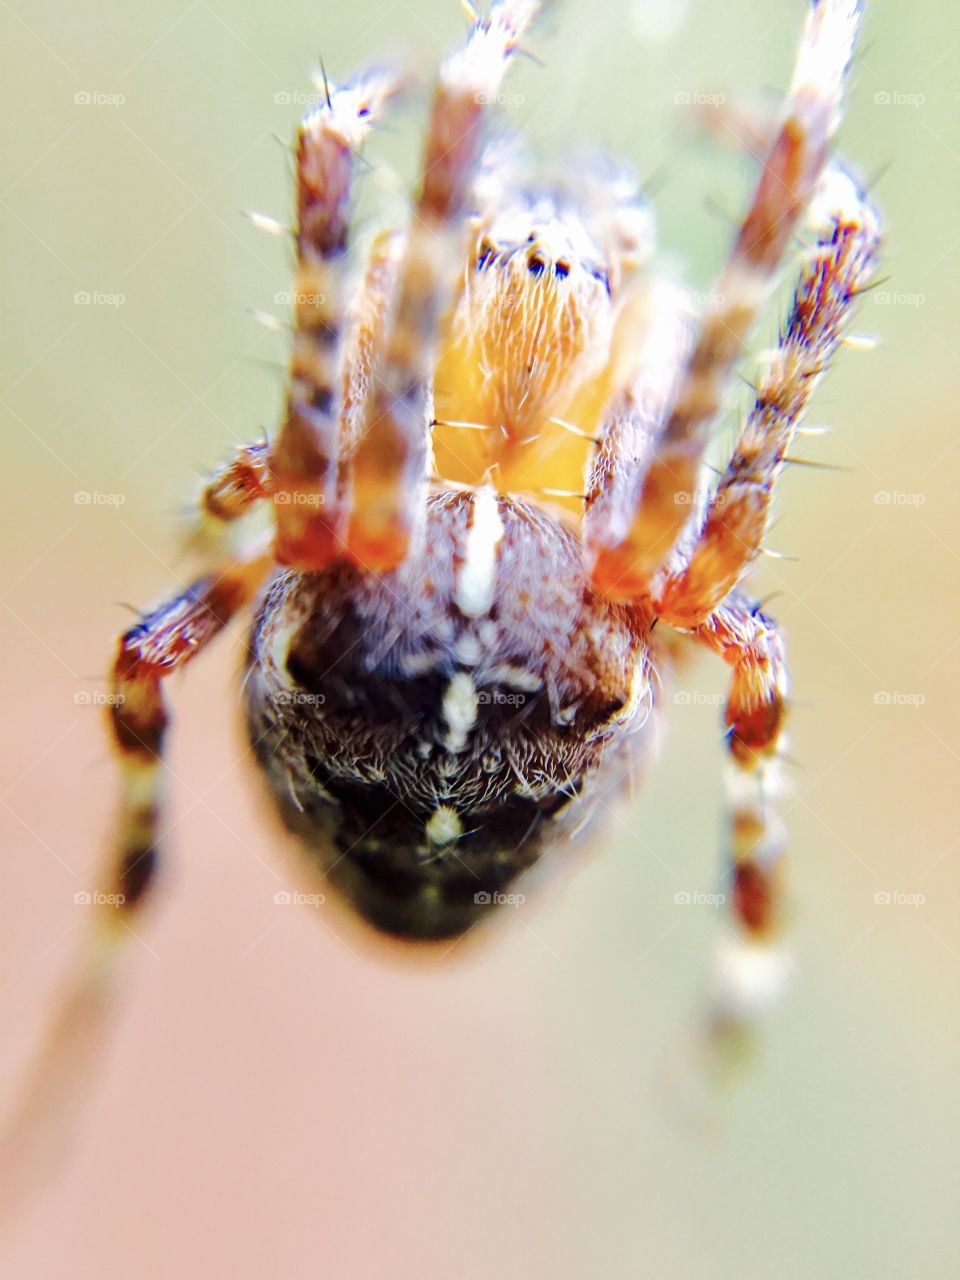 Macro - Spider